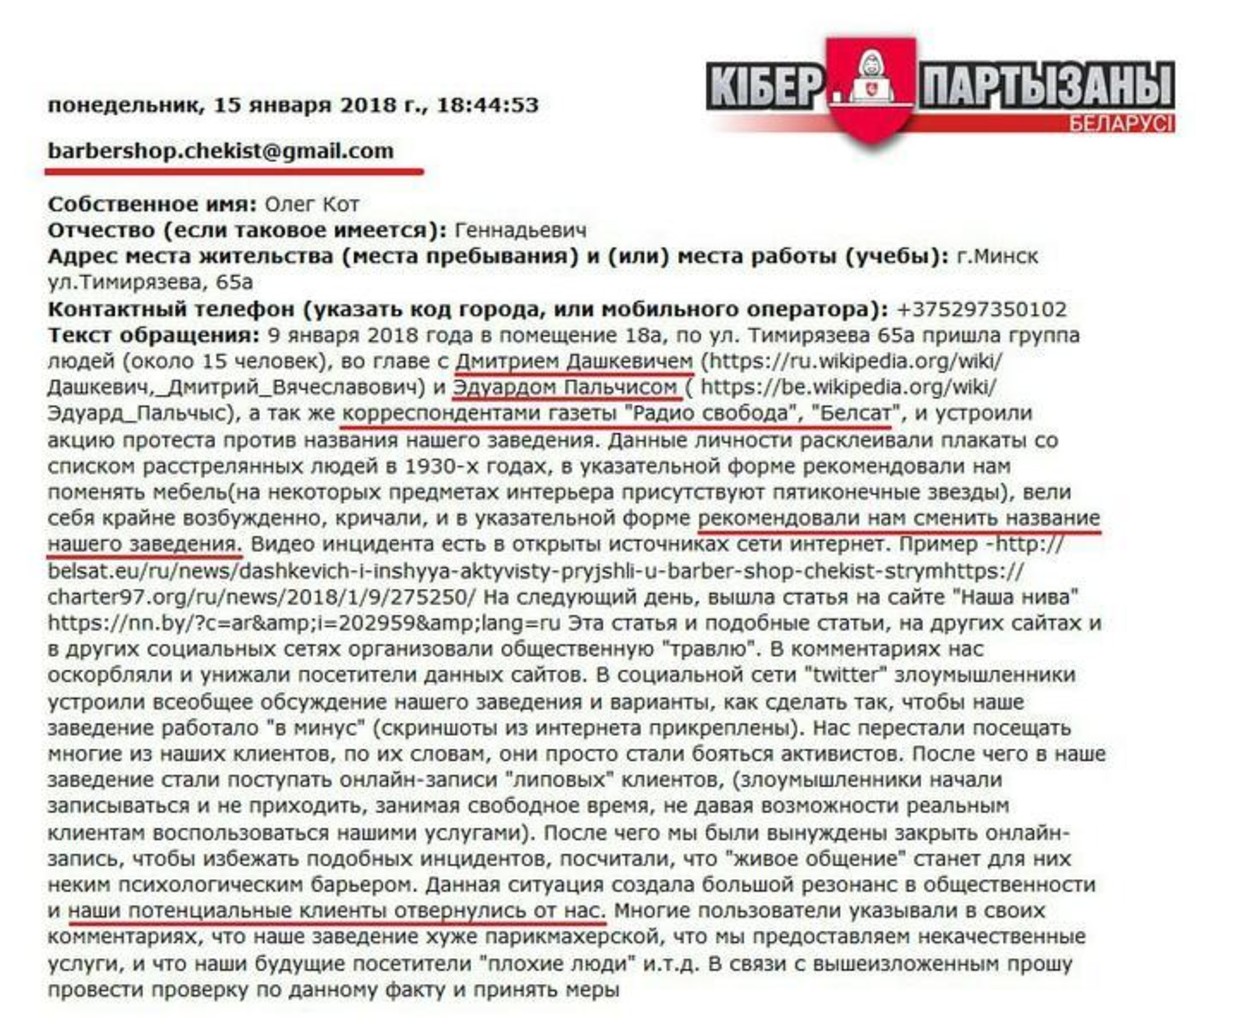 Пример сообщения, отправленного в КГБ через сайт ведомства. Фото: Telegram / cpartisans_by